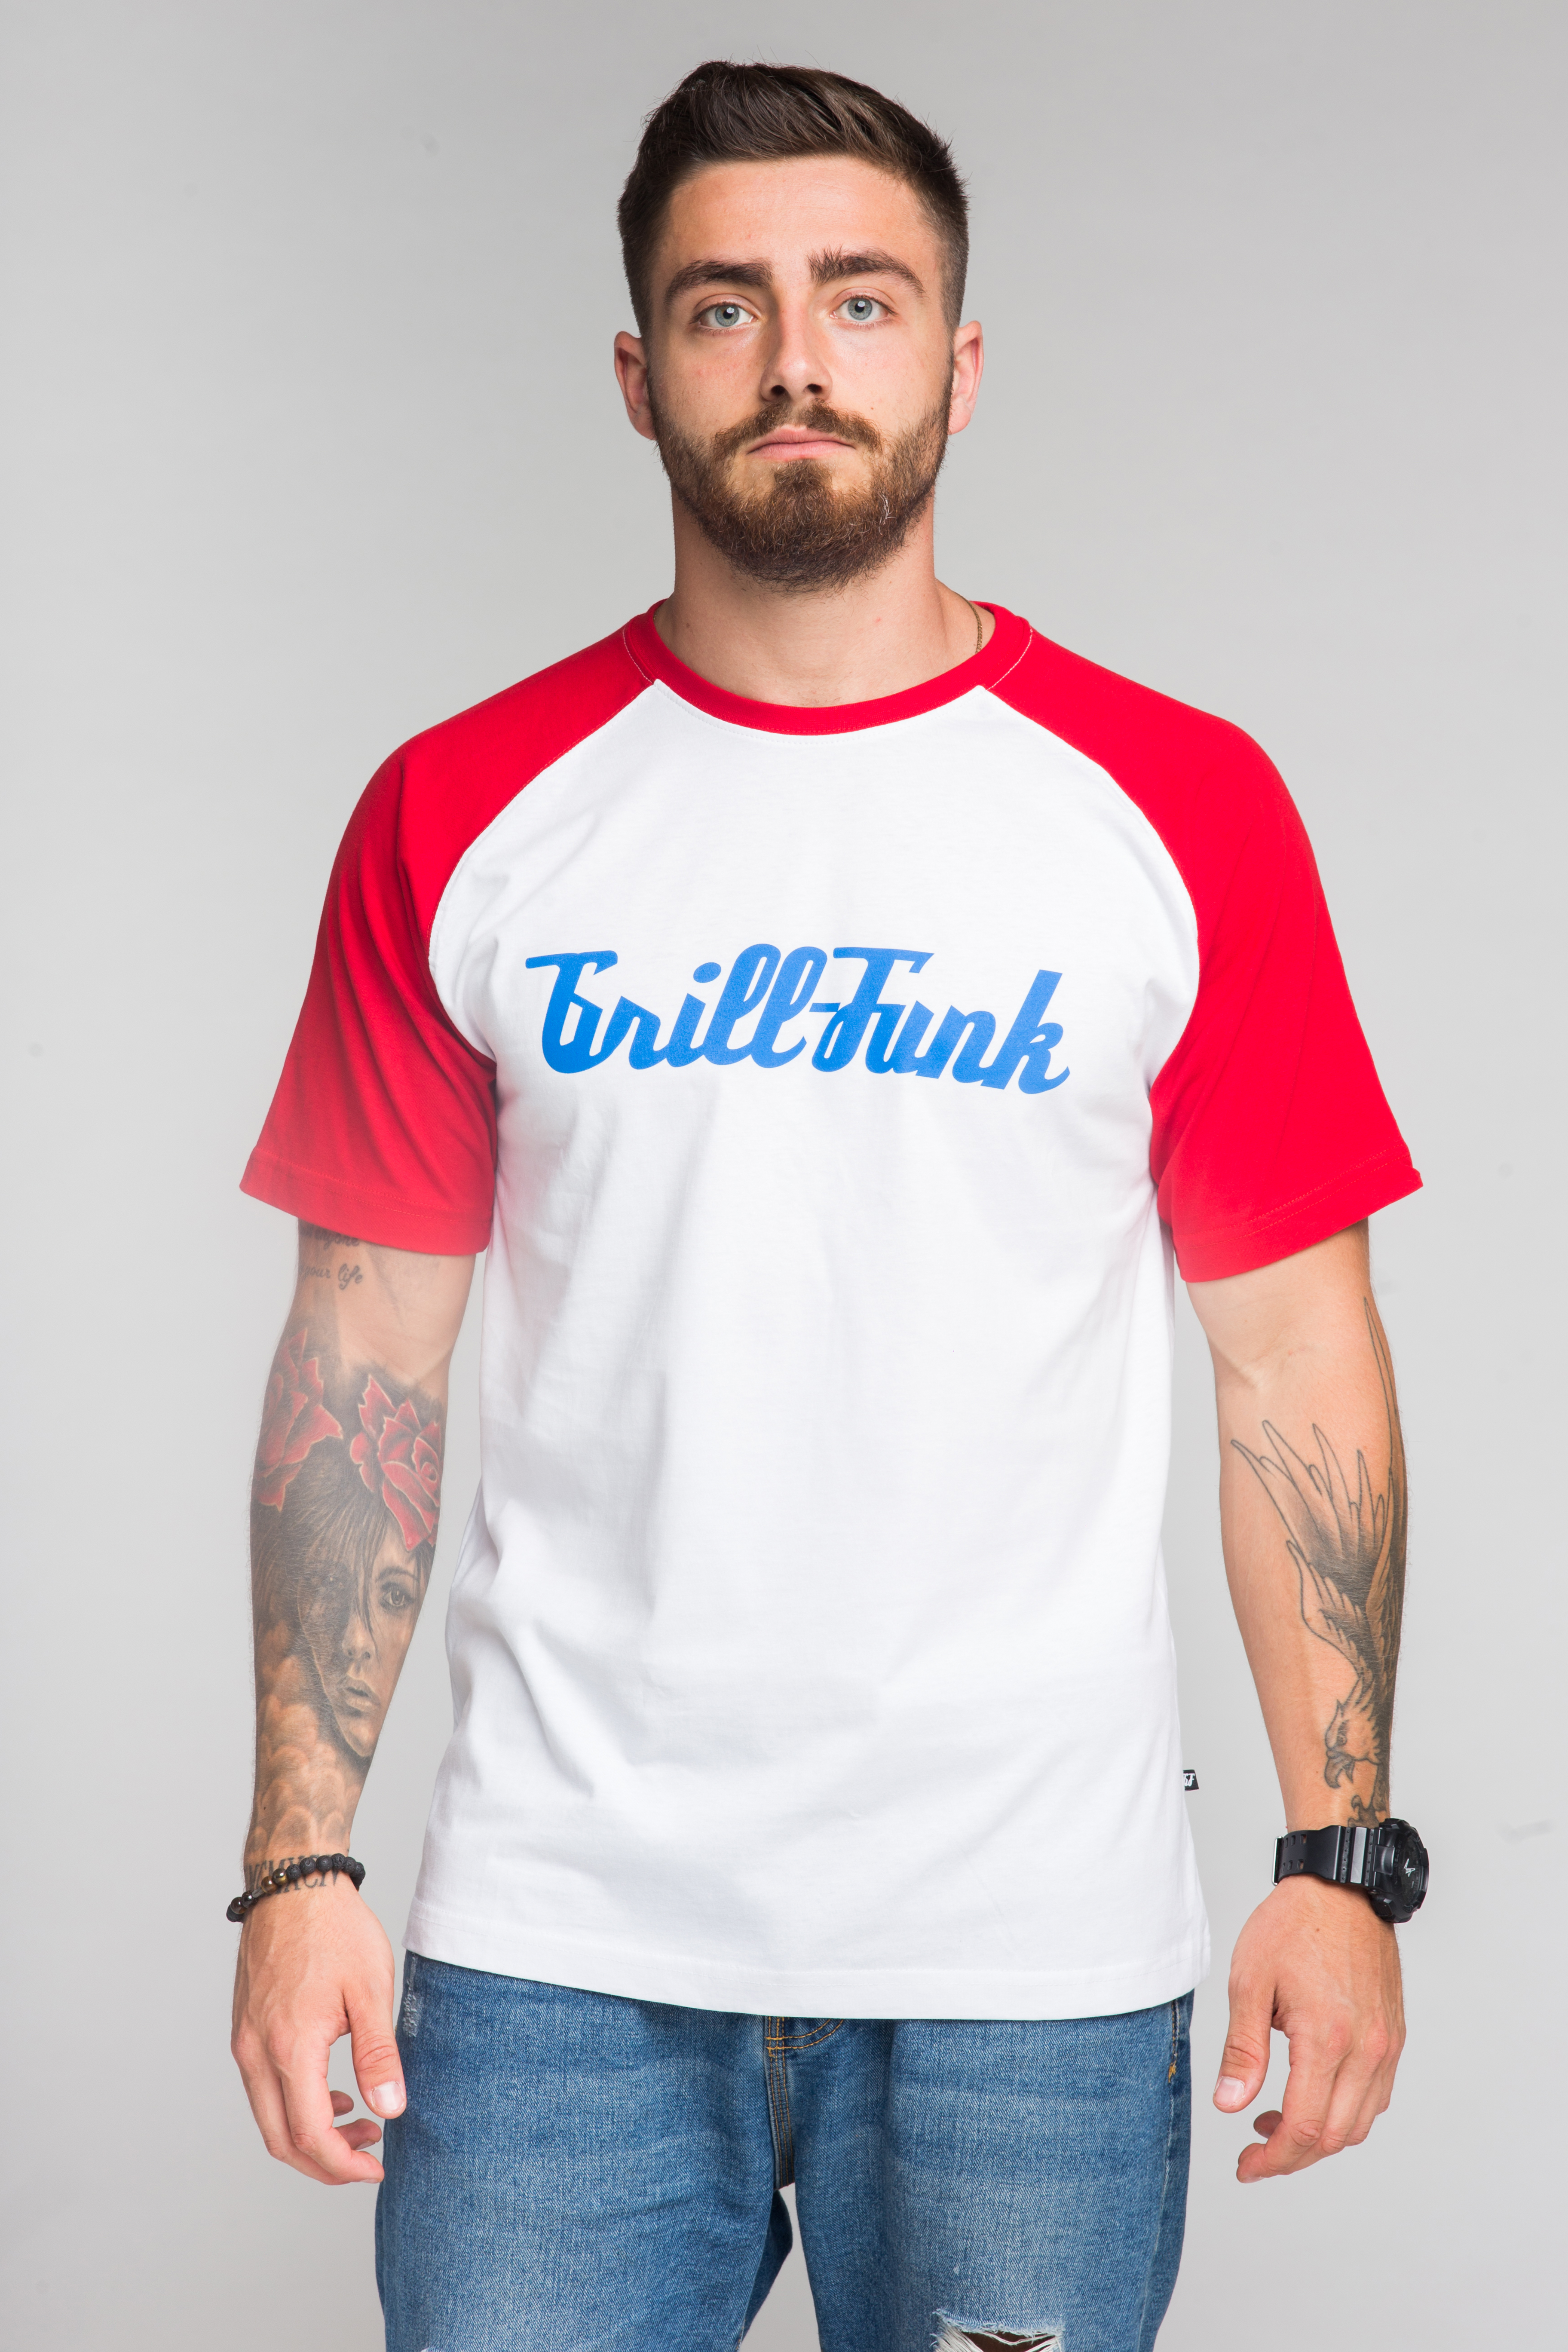 T-shirt męski Grill-Funk Contrast - biało/czerwona